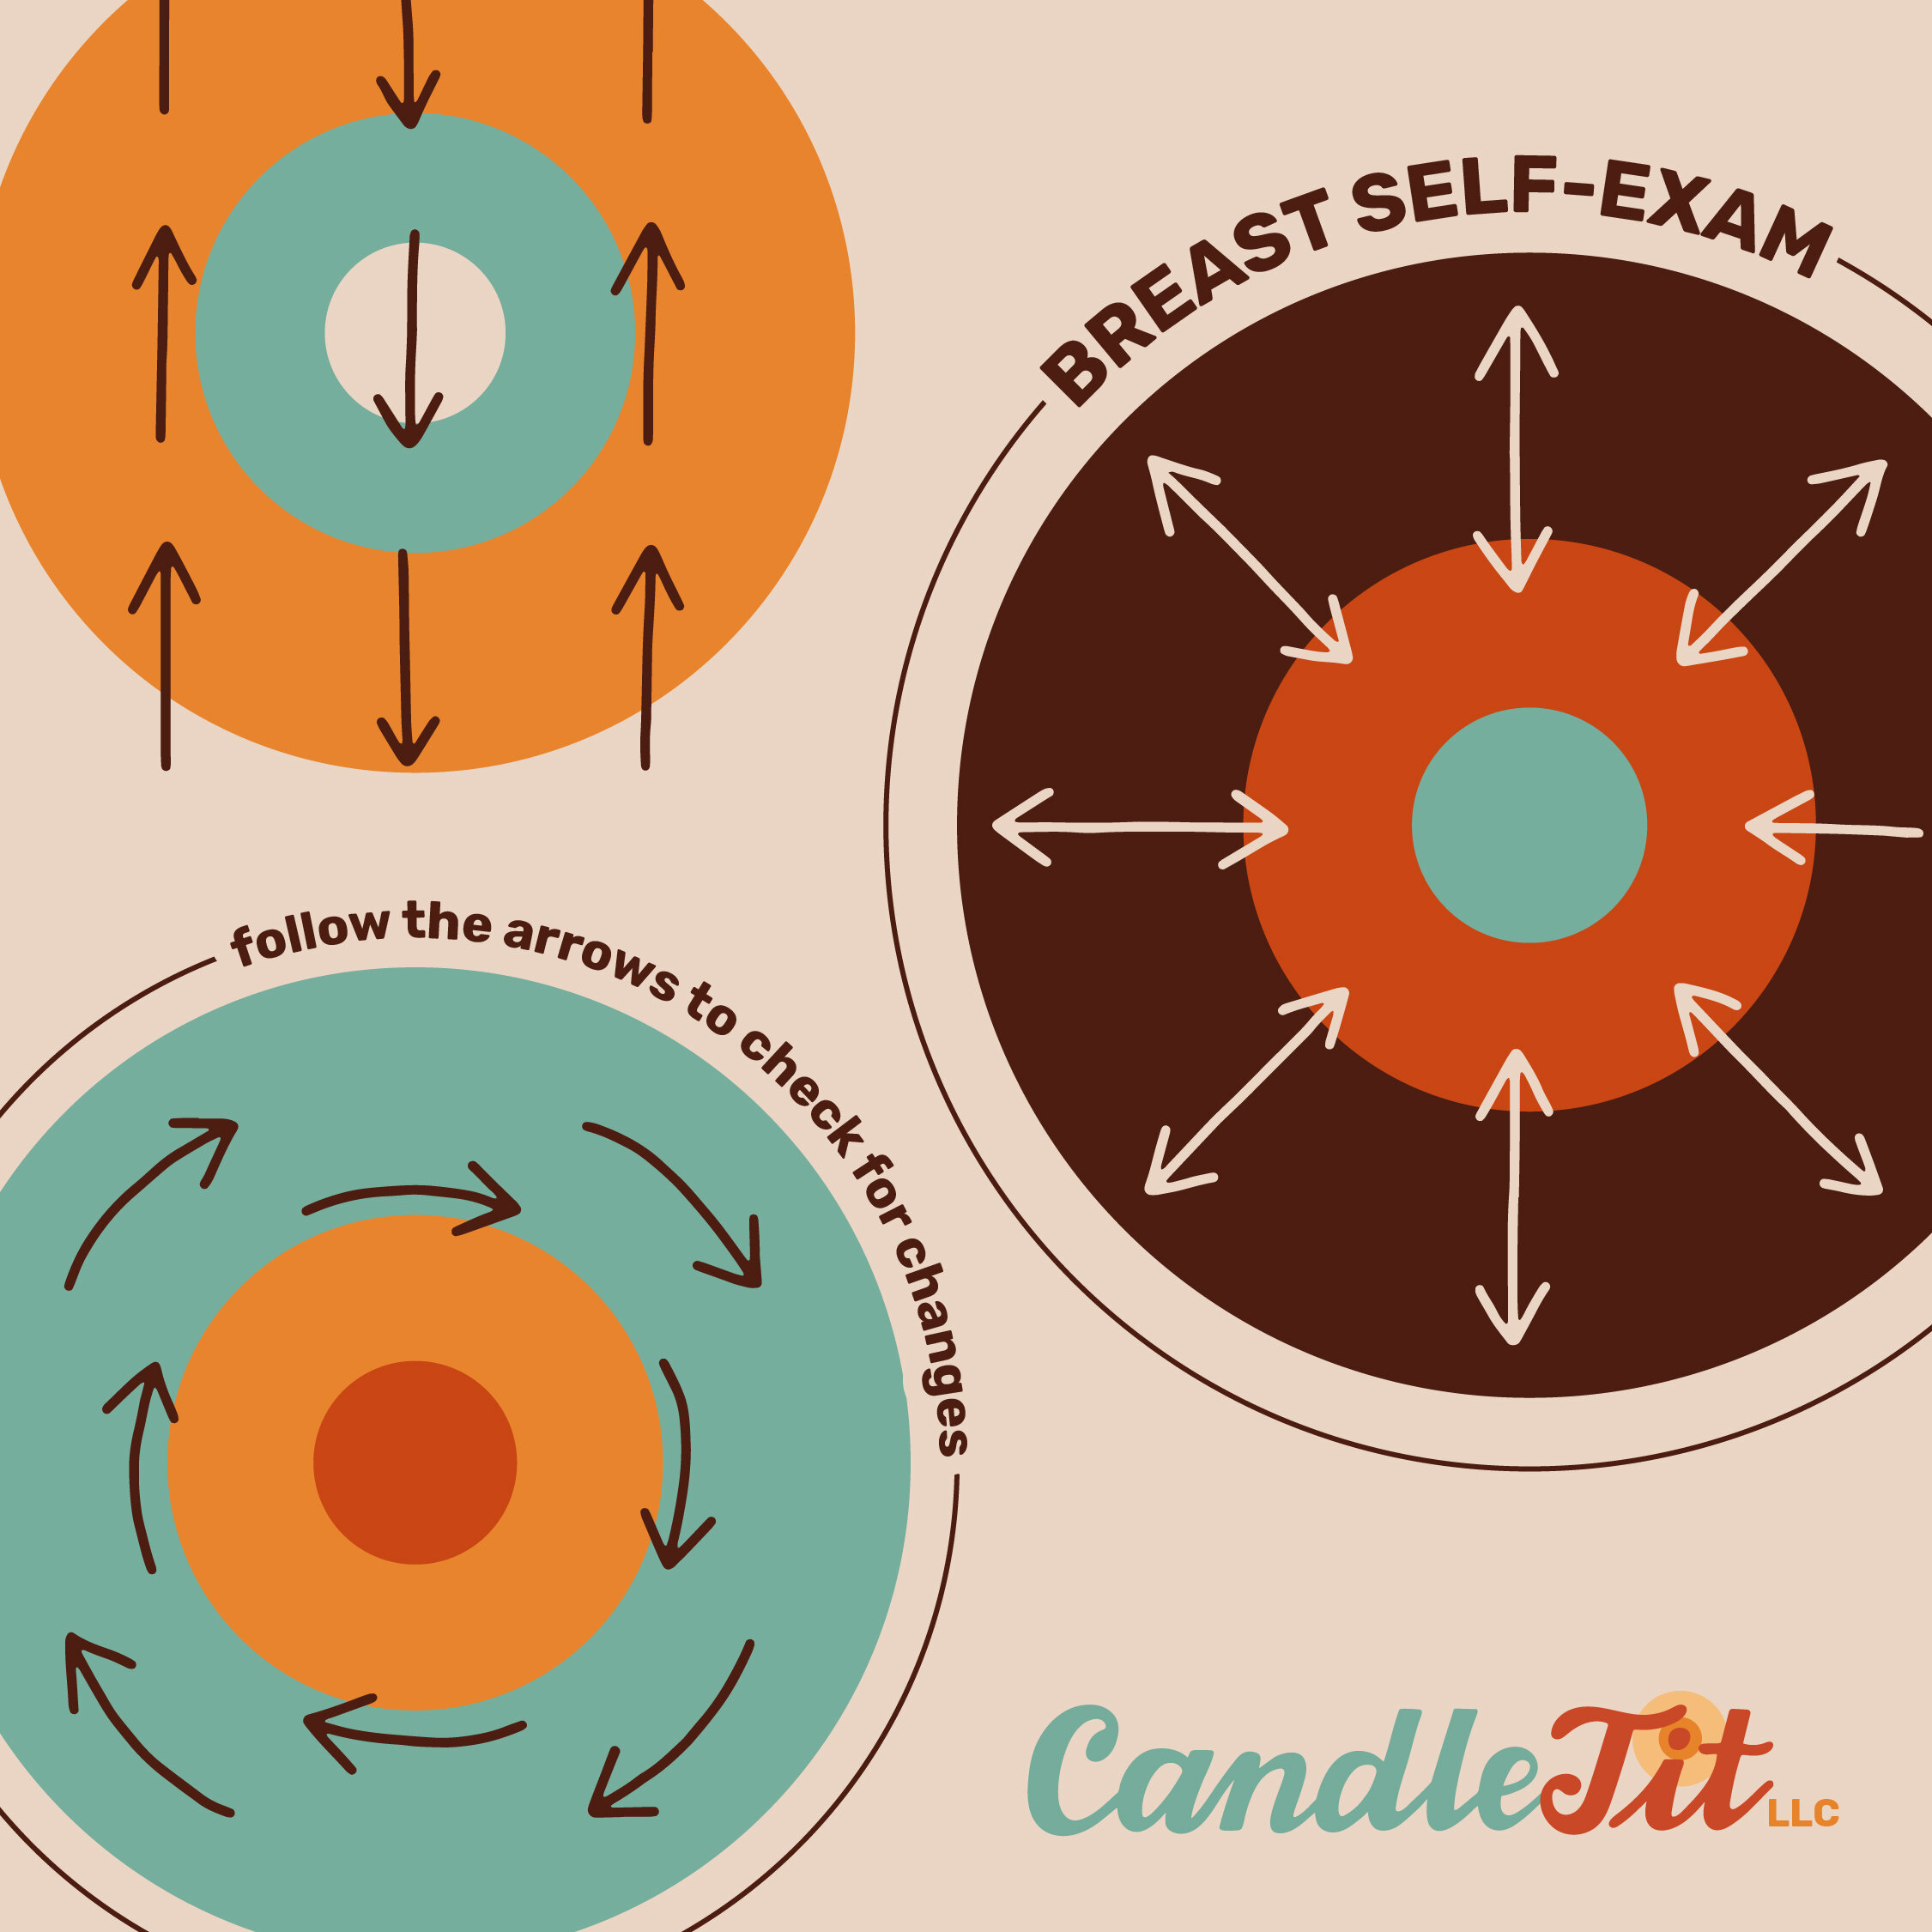 CandleTit-SocialGraphics-LetteringWorks-05.jpg